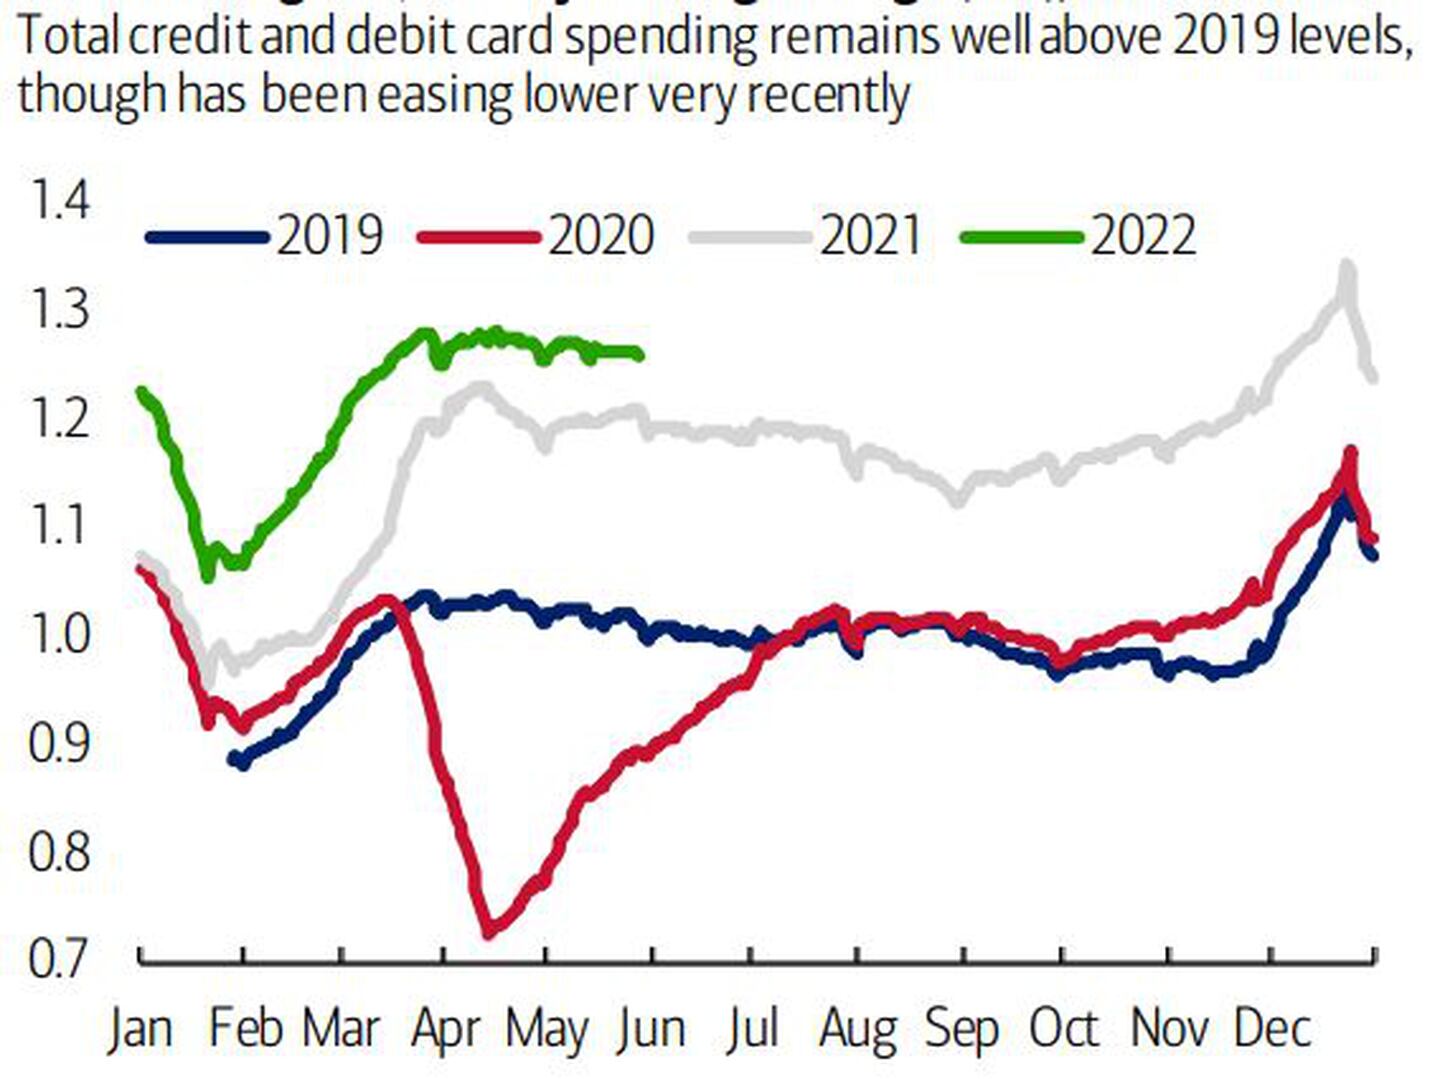 El gasto total con tarjetas de crédito y débito se mantiene muy por encima de los niveles de 2019, aunque se ha suavizado a la baja muy recientementedfd